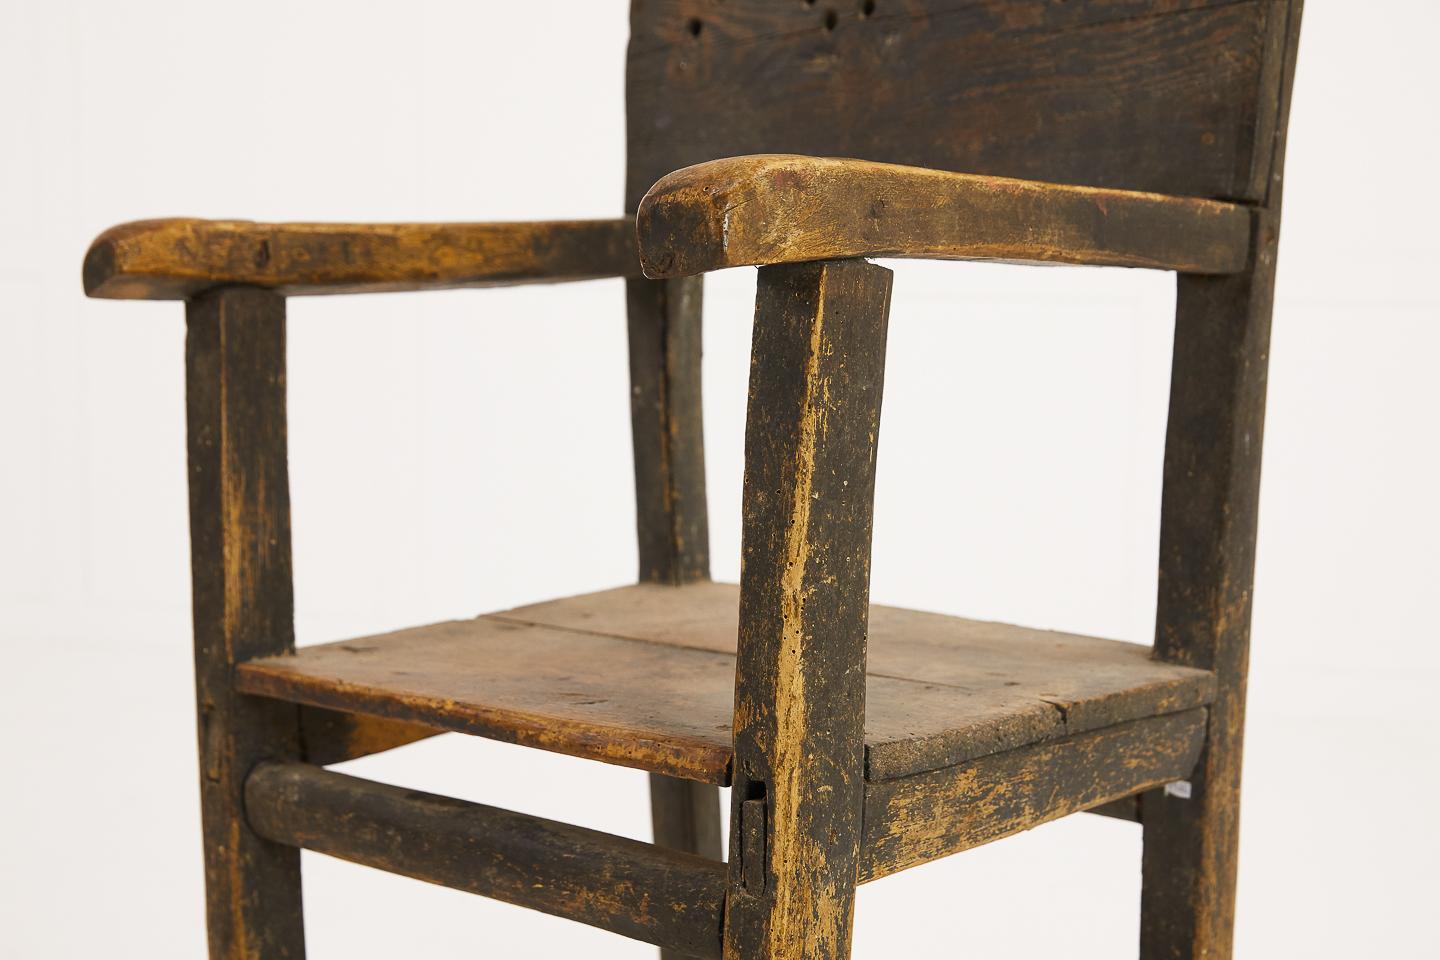 Cooler Kiefer-Volkskunst-Schaukelstuhl aus dem 19. Jahrhundert mit Originalfarbe. Es ist ein ziemlich rustikaler Stuhl mit Anzeichen von Holzwurm, der von Thermo Lignum London vollständig behandelt wurde. Es wäre nicht ratsam, dieses Stück als